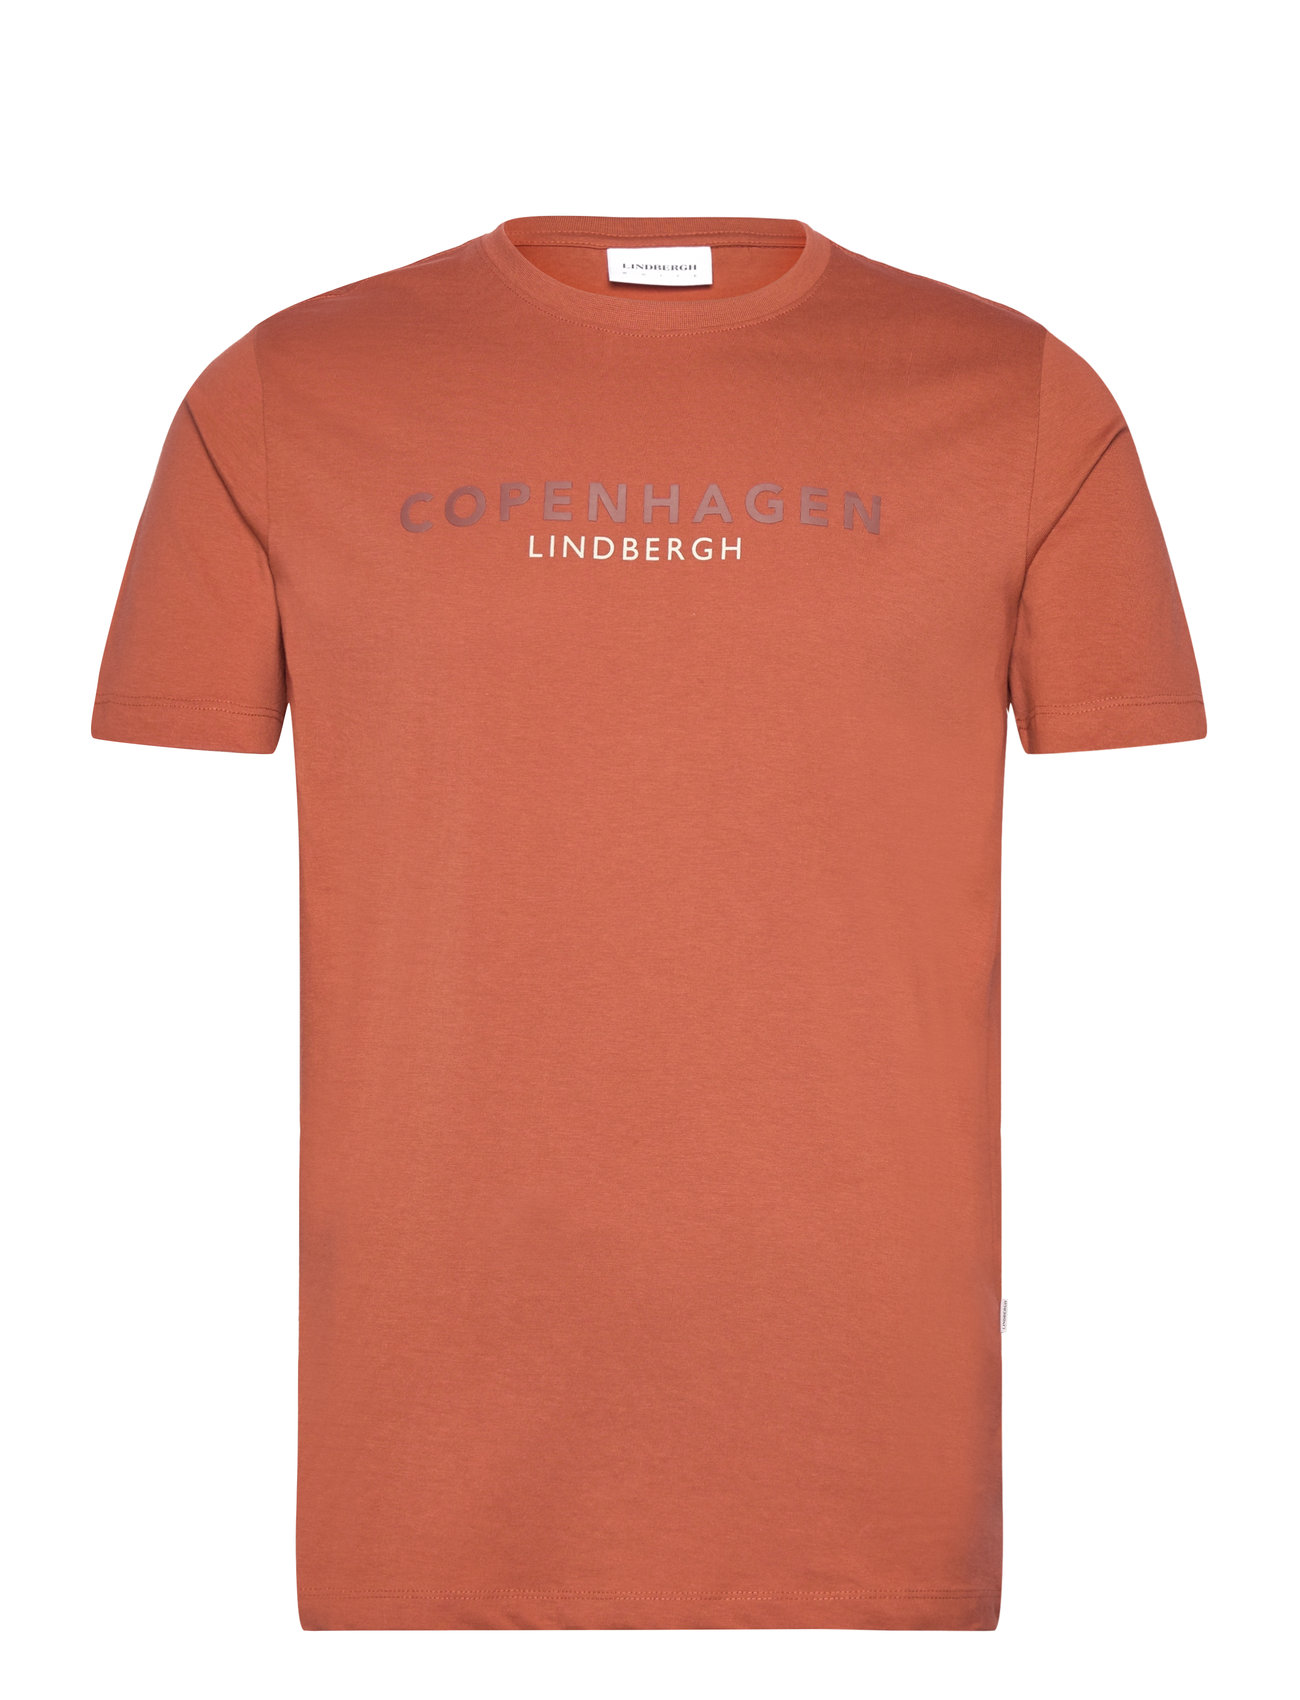 Copenhagen Print Tee S/S Tops T-Kortærmet Skjorte Orange Lindbergh